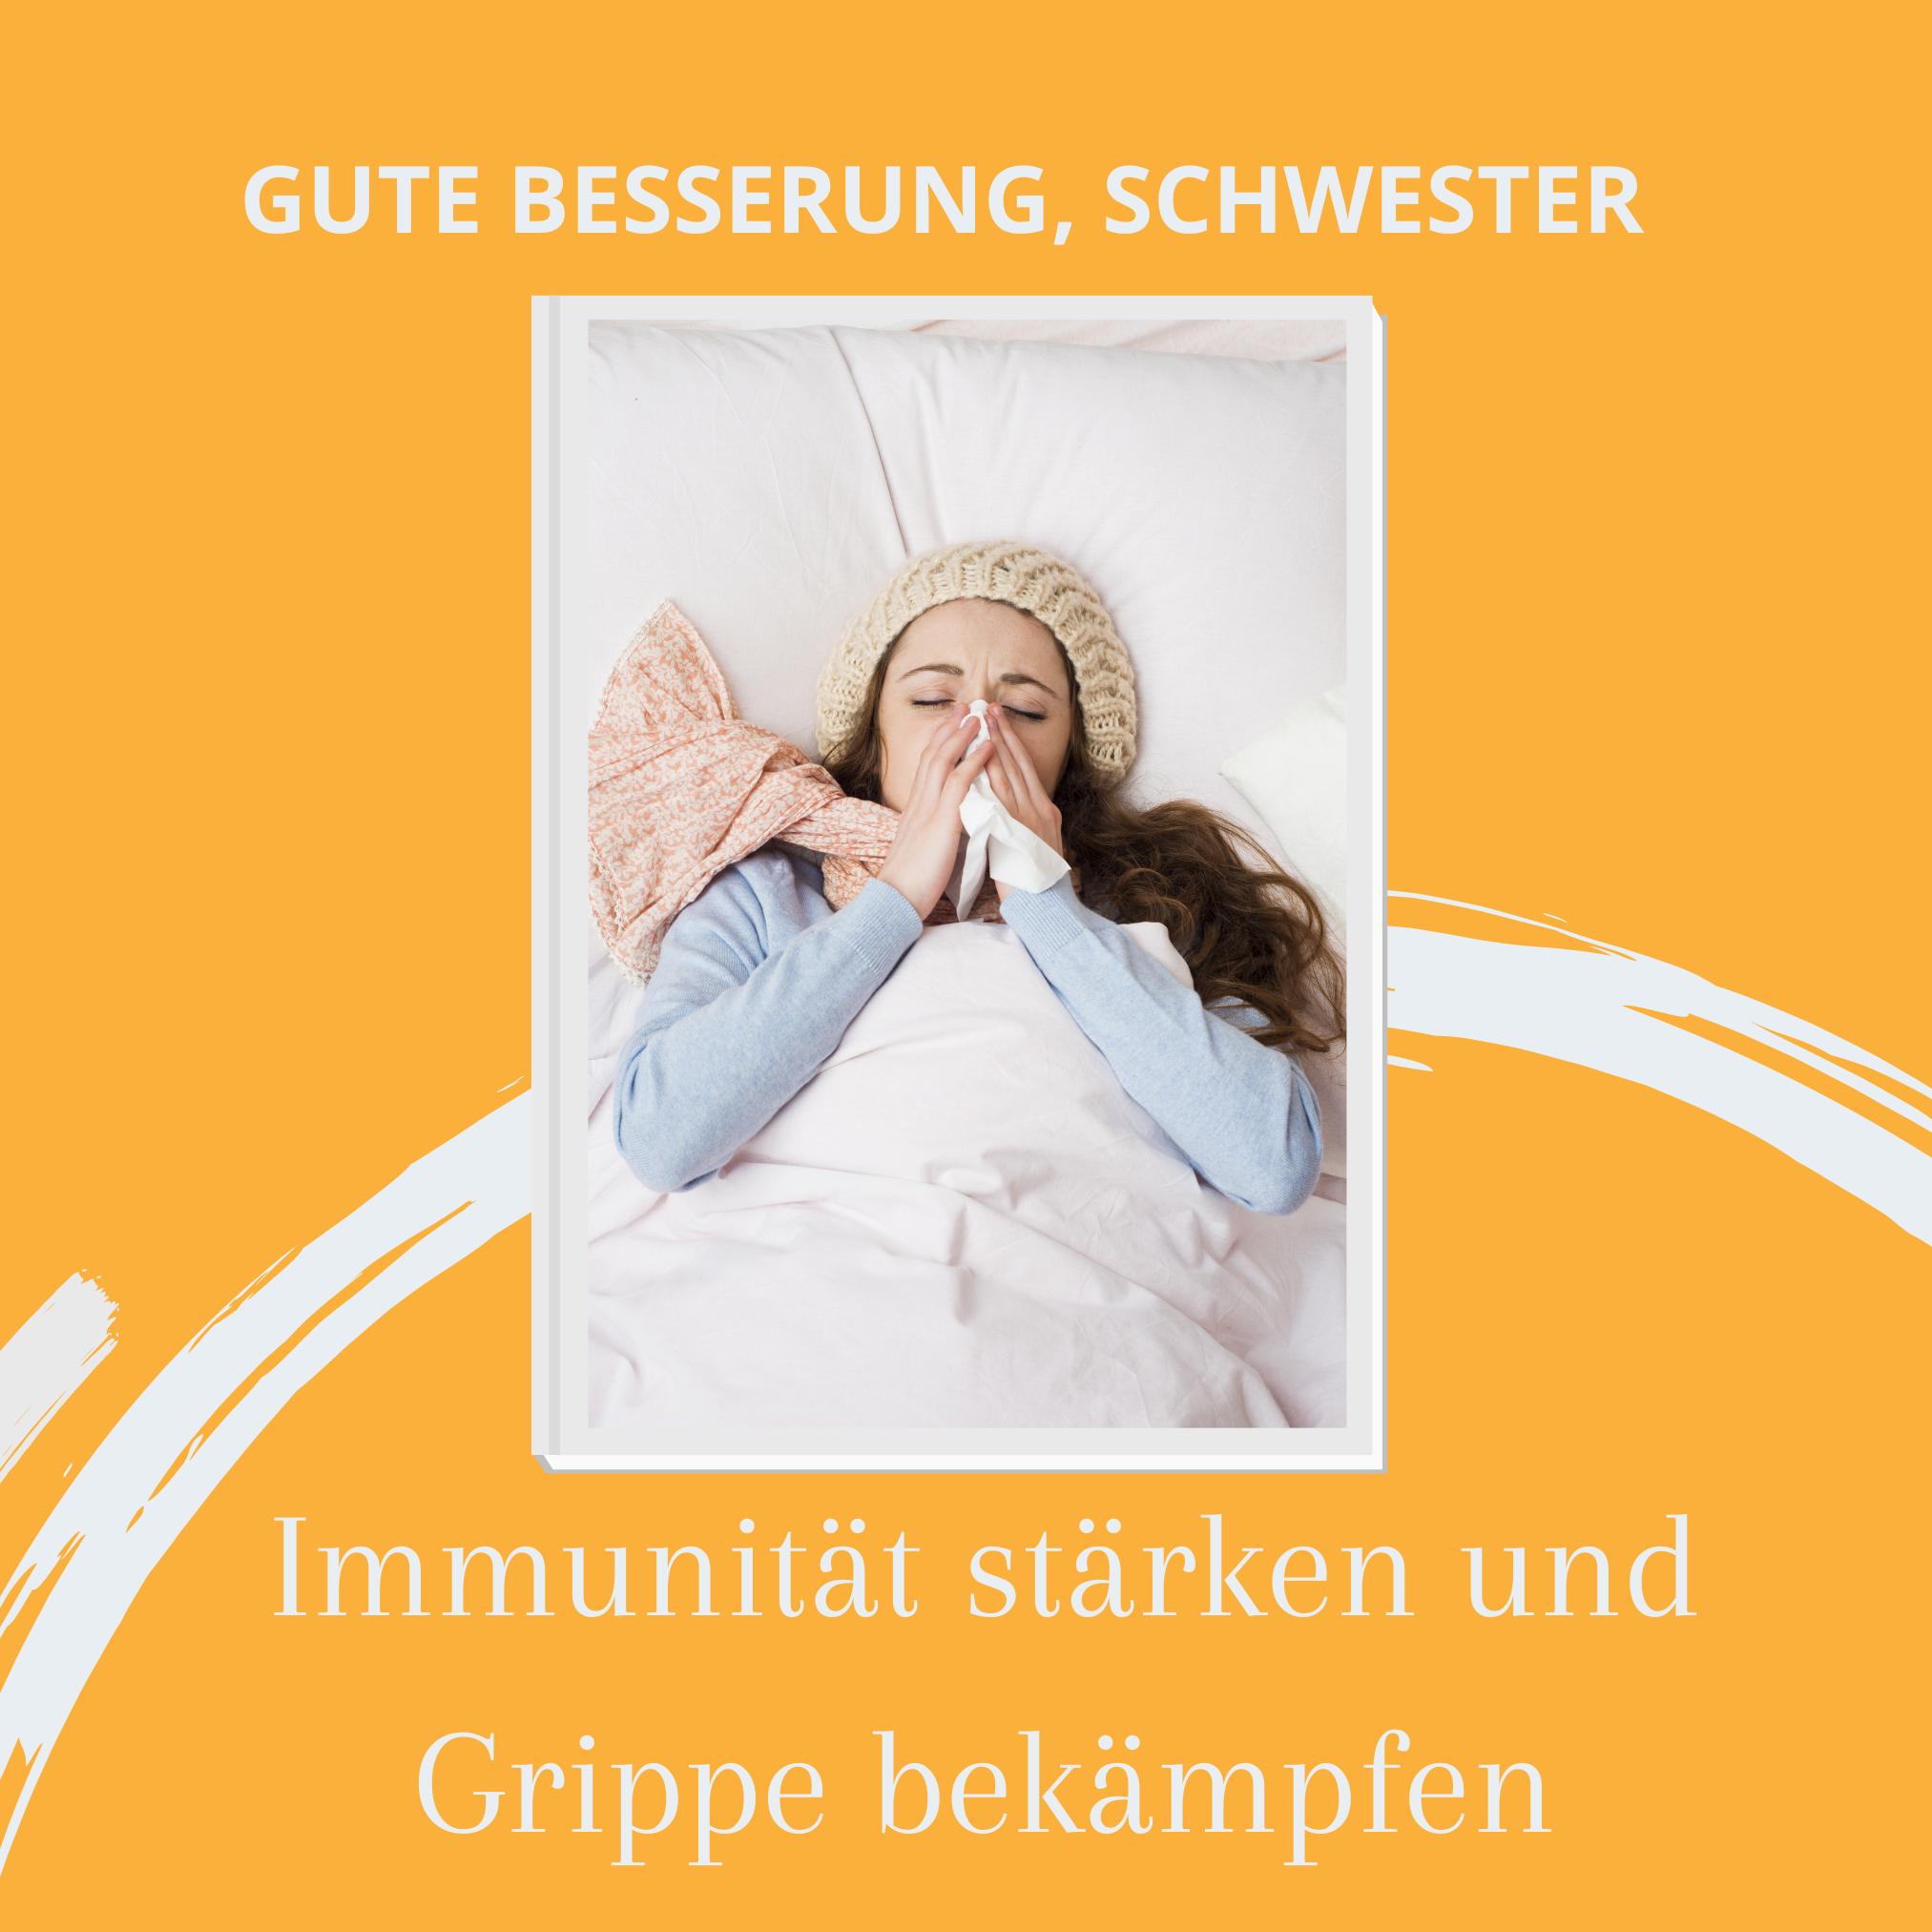 Immunität stärken und Grippe bekämpfen: